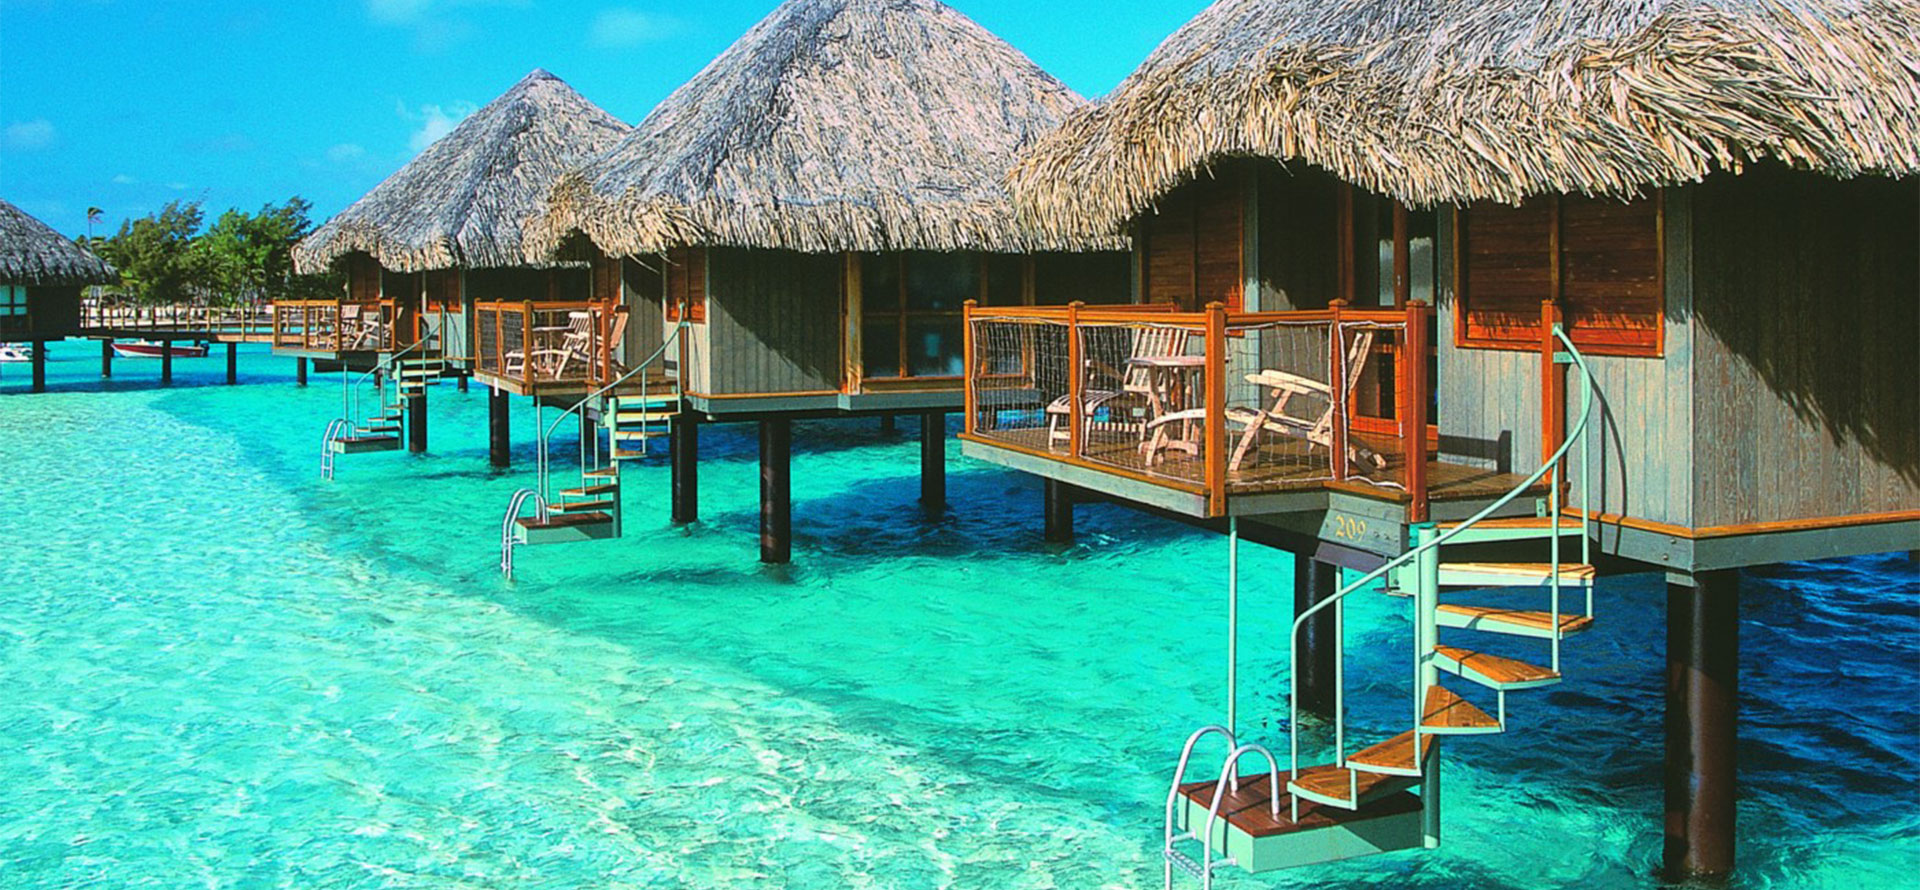 Belize overwater bungalow.